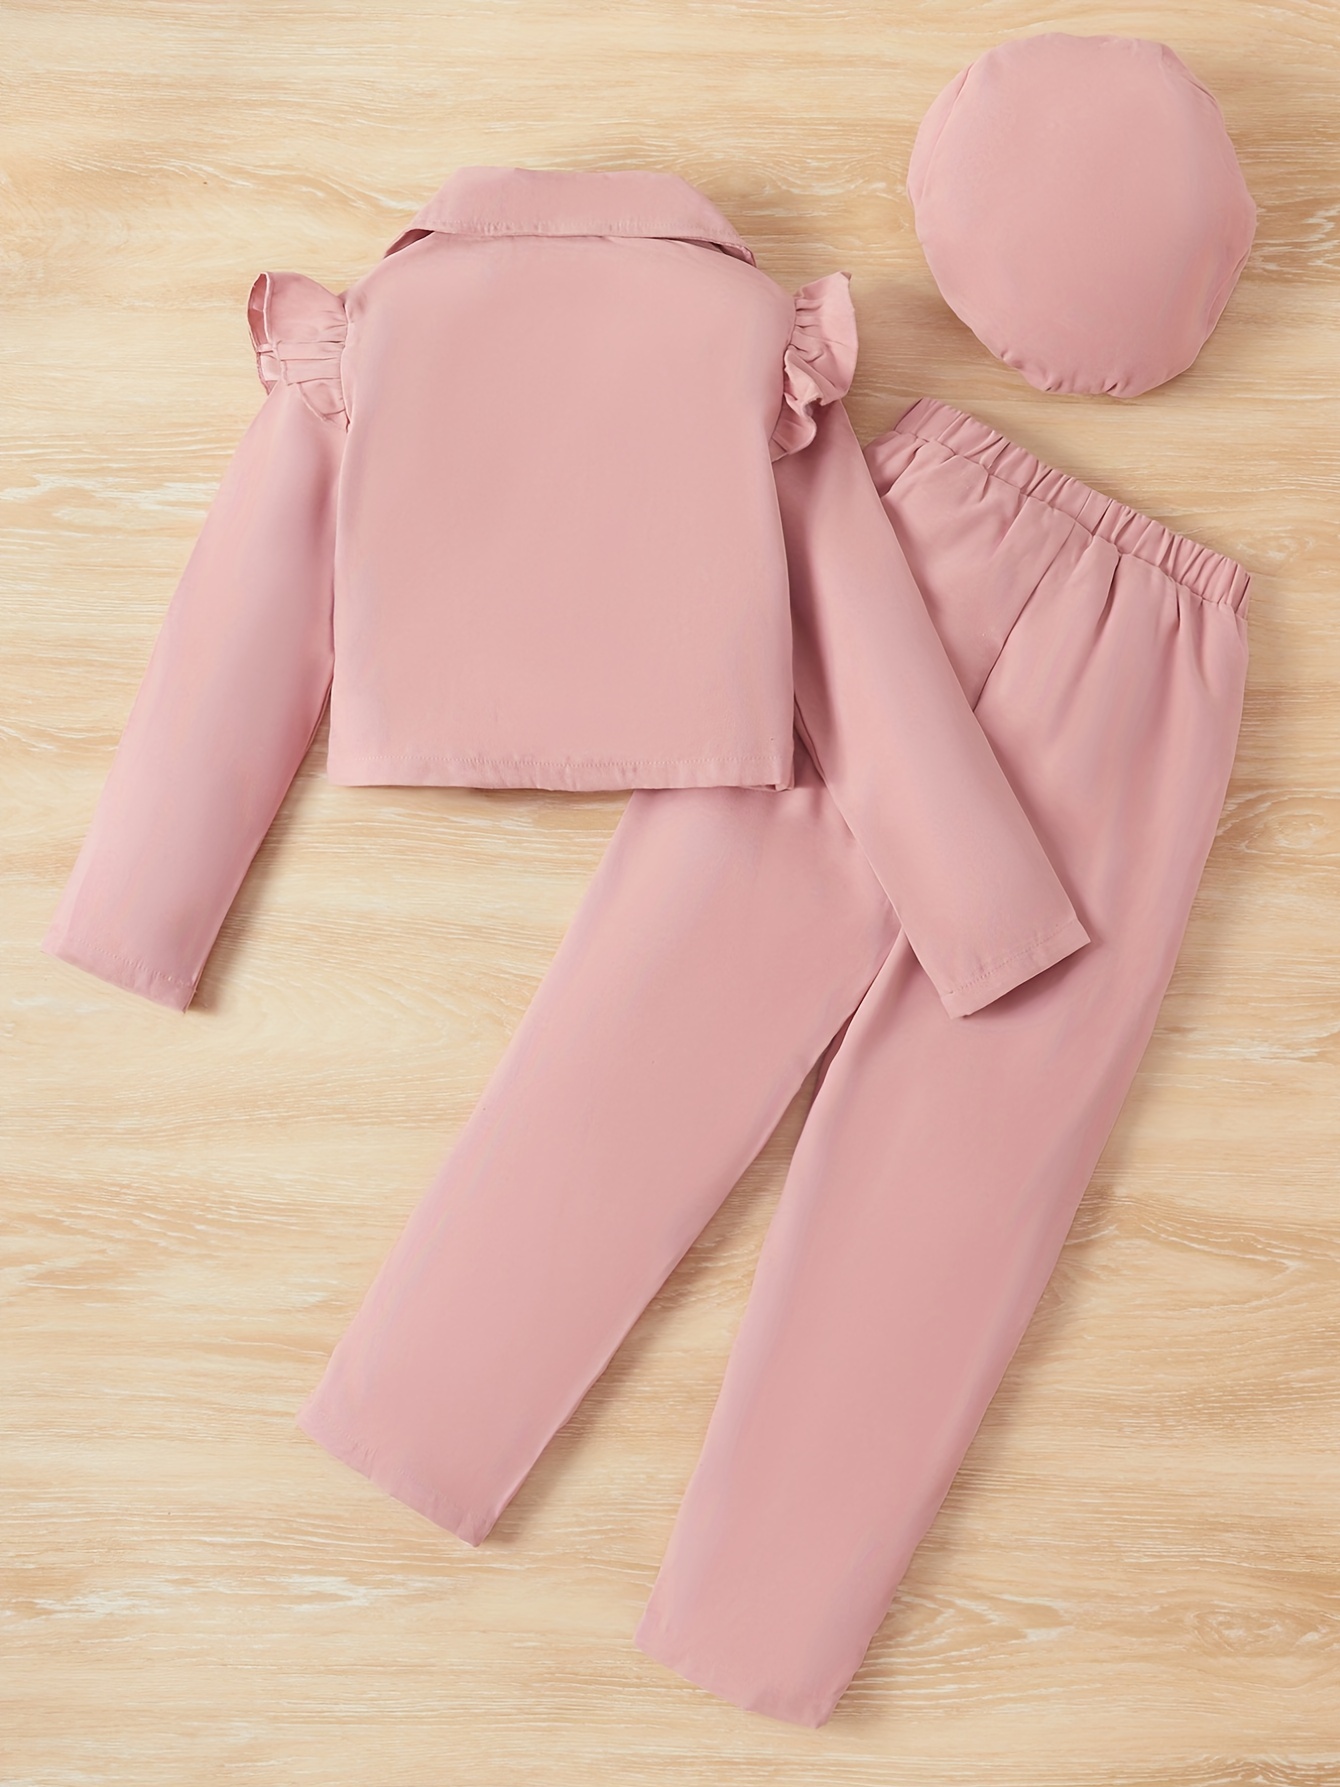 Teen Girls Blazer Set Autumn Leisure Solid Color Jacket Pants 2pcs Elegant  Child Wedding Suit Fashion Korean School Kids Clothes